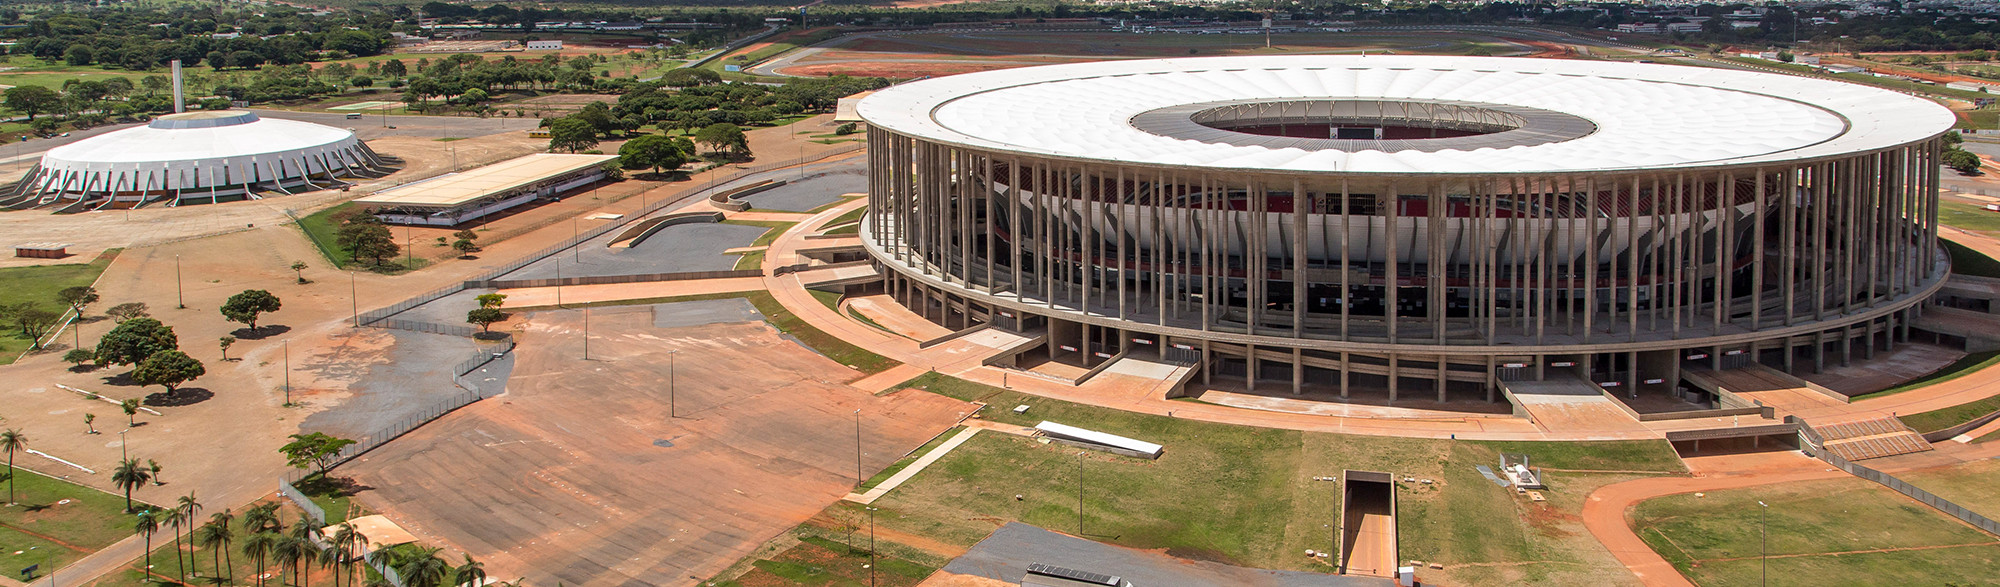 Brasília Mané Garrincha Stadium